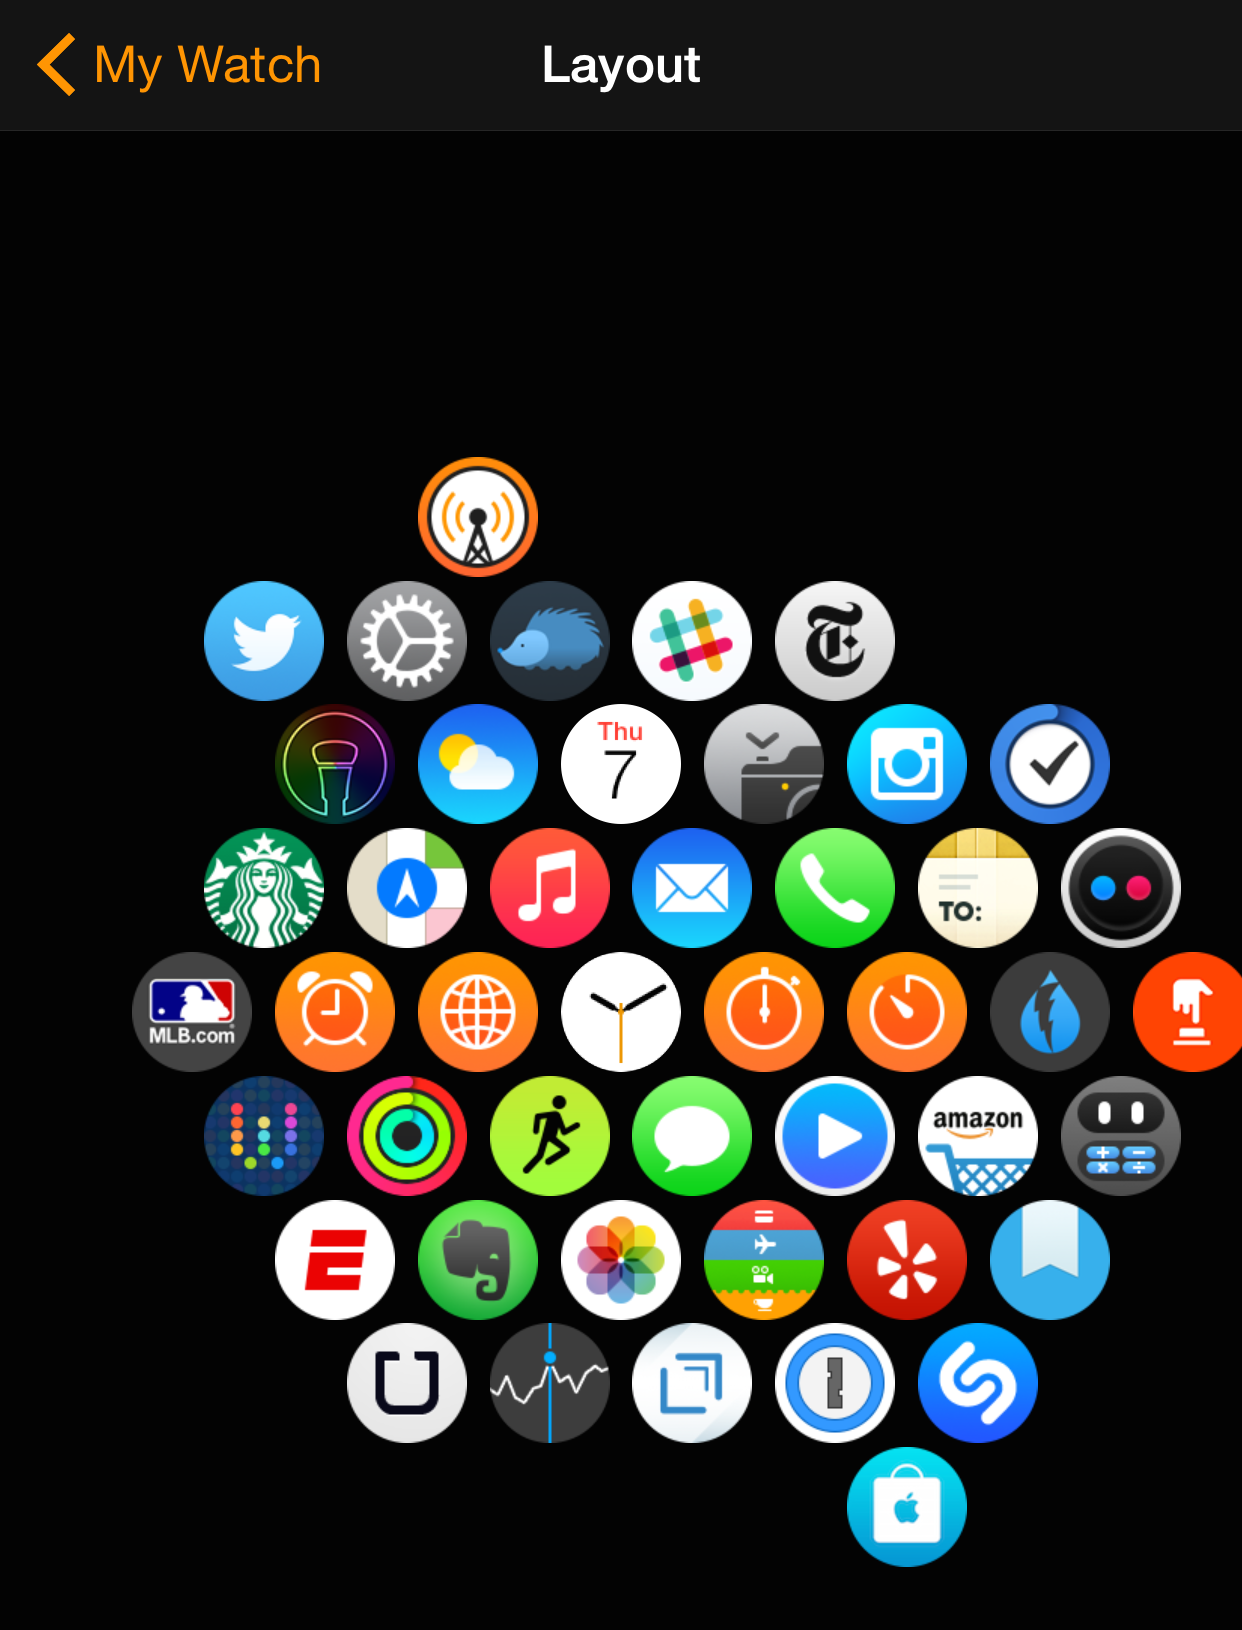 Apple Watch App Layout